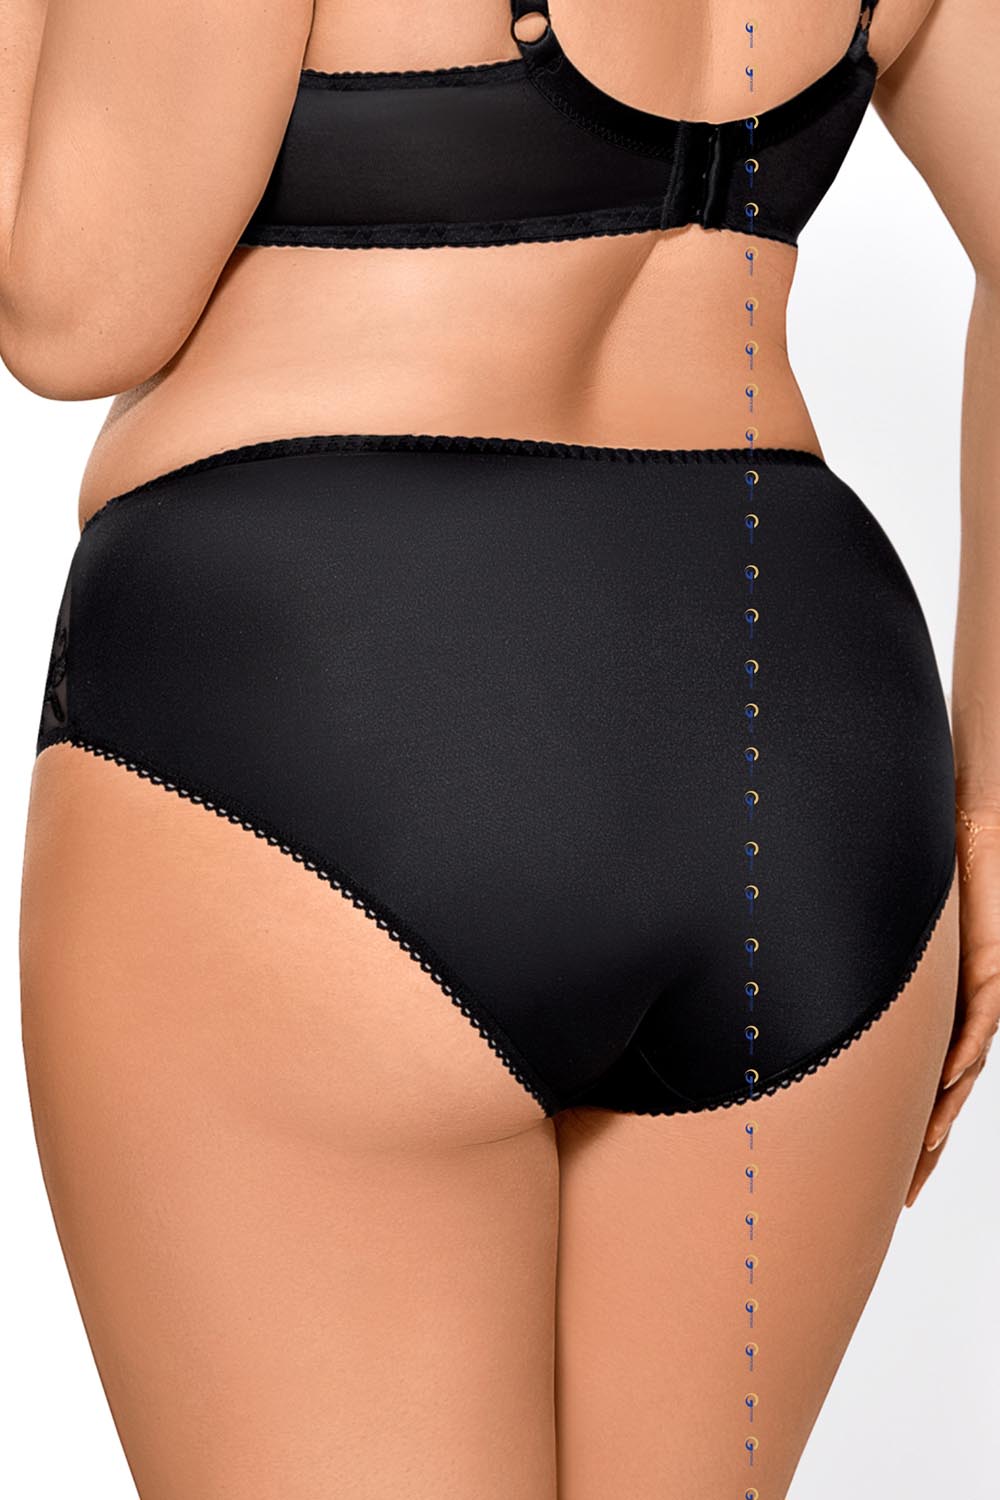 Panties model 109484 Gorsenia Lingerie black Ladies